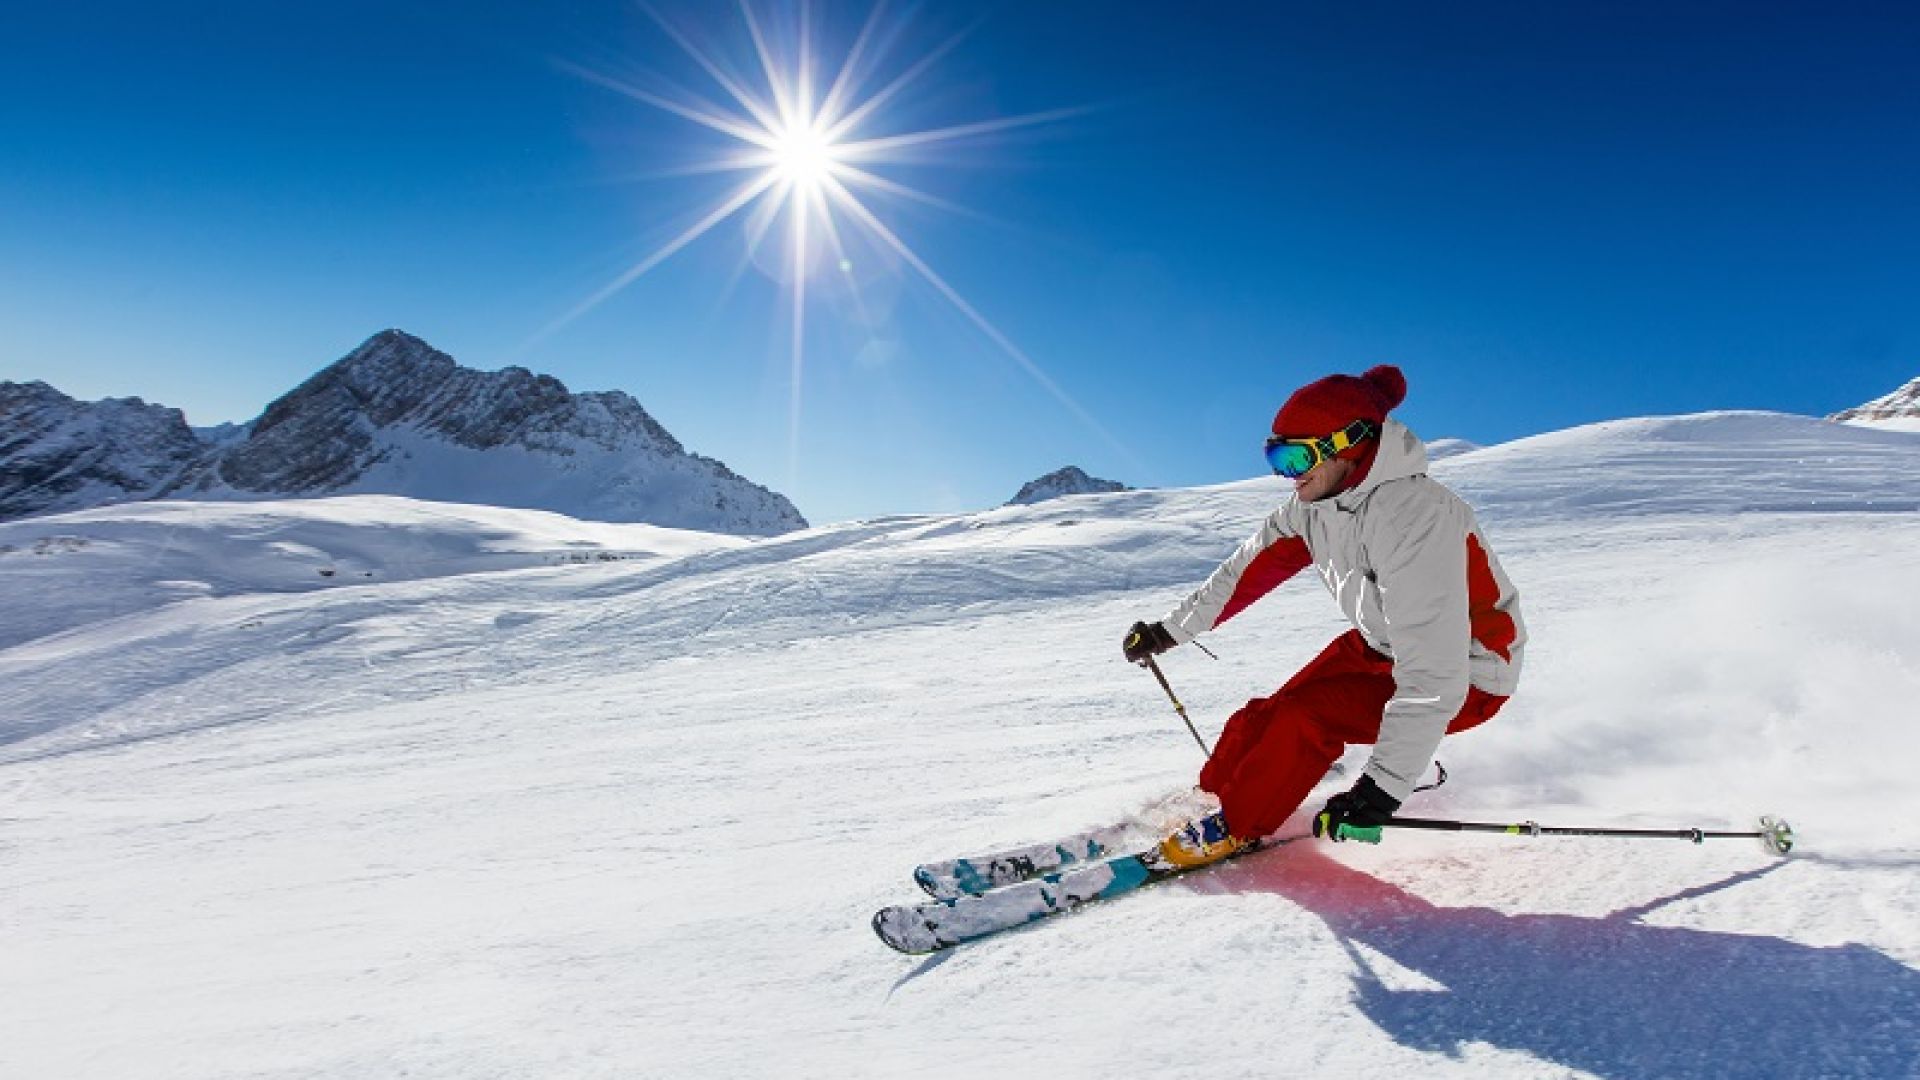 GENERALI е генерален спонсор на световната купа по ски алпийски дисциплини за мъже в BANSKO 2019